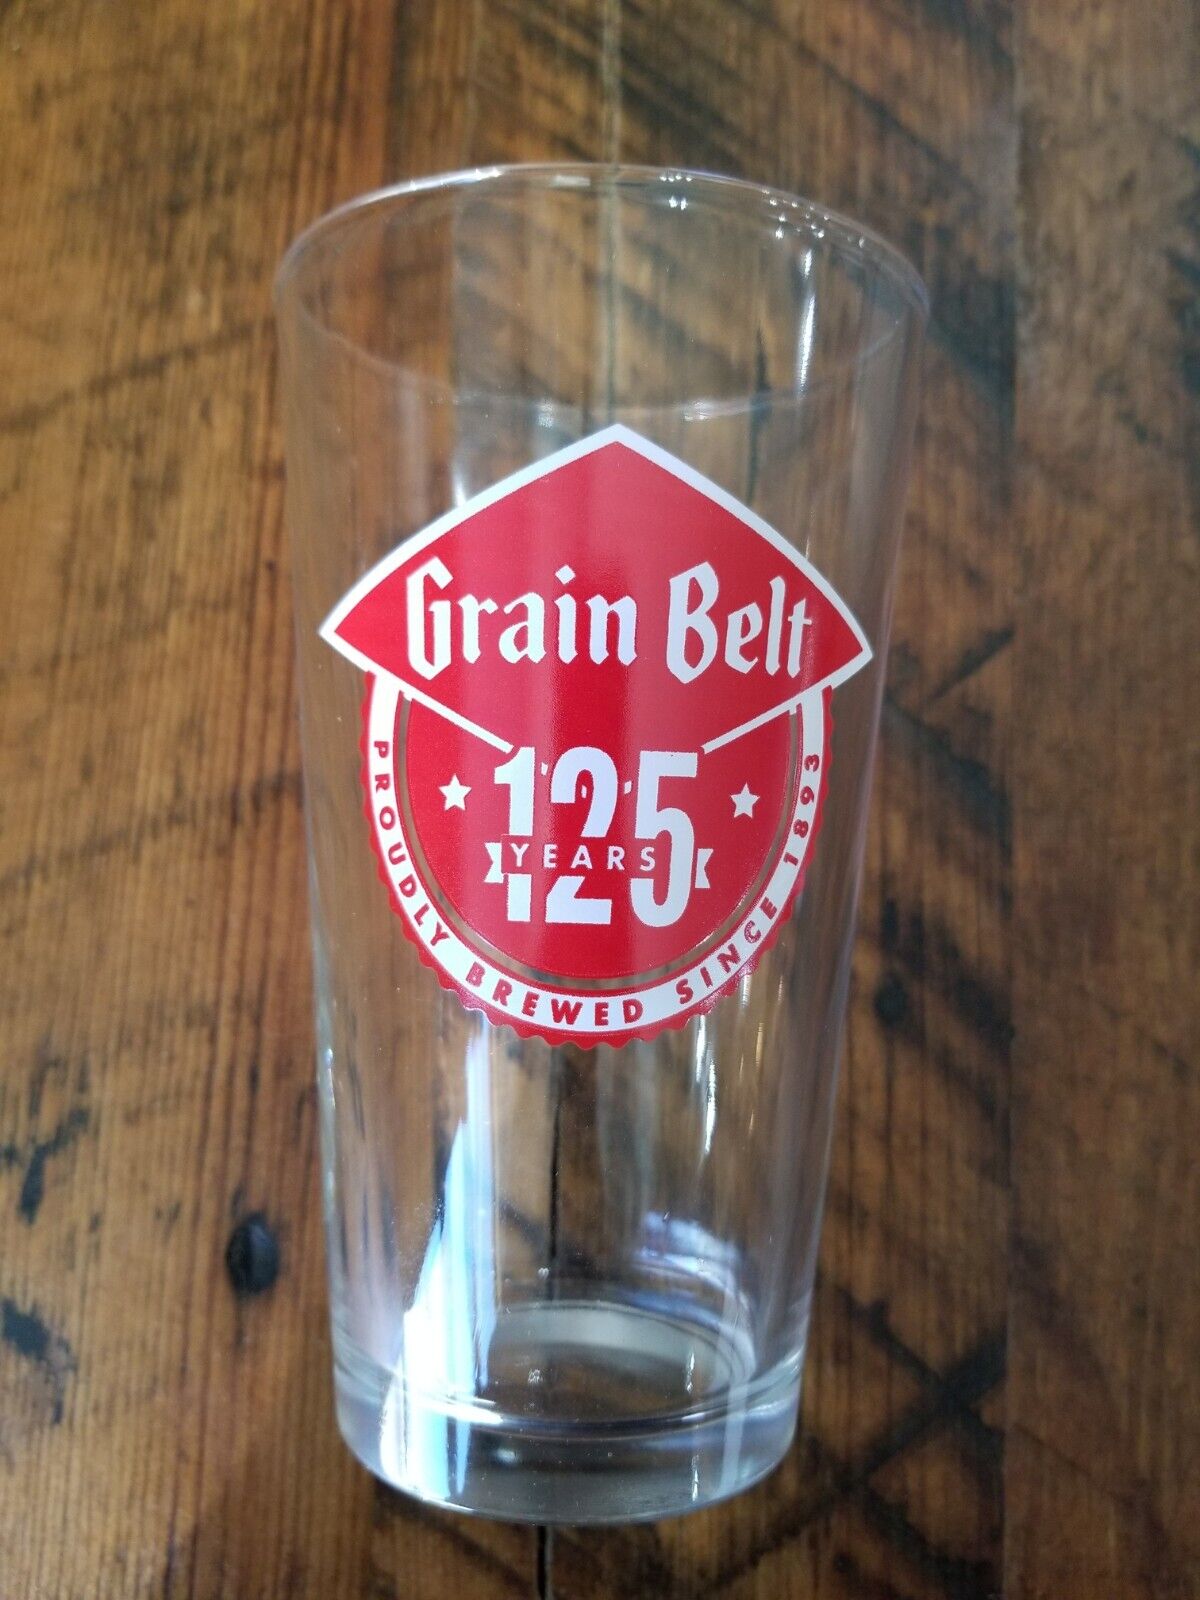 New Grain Belt Beer Glass 125th Anniversary / Home Barware / Pint glass Rare 